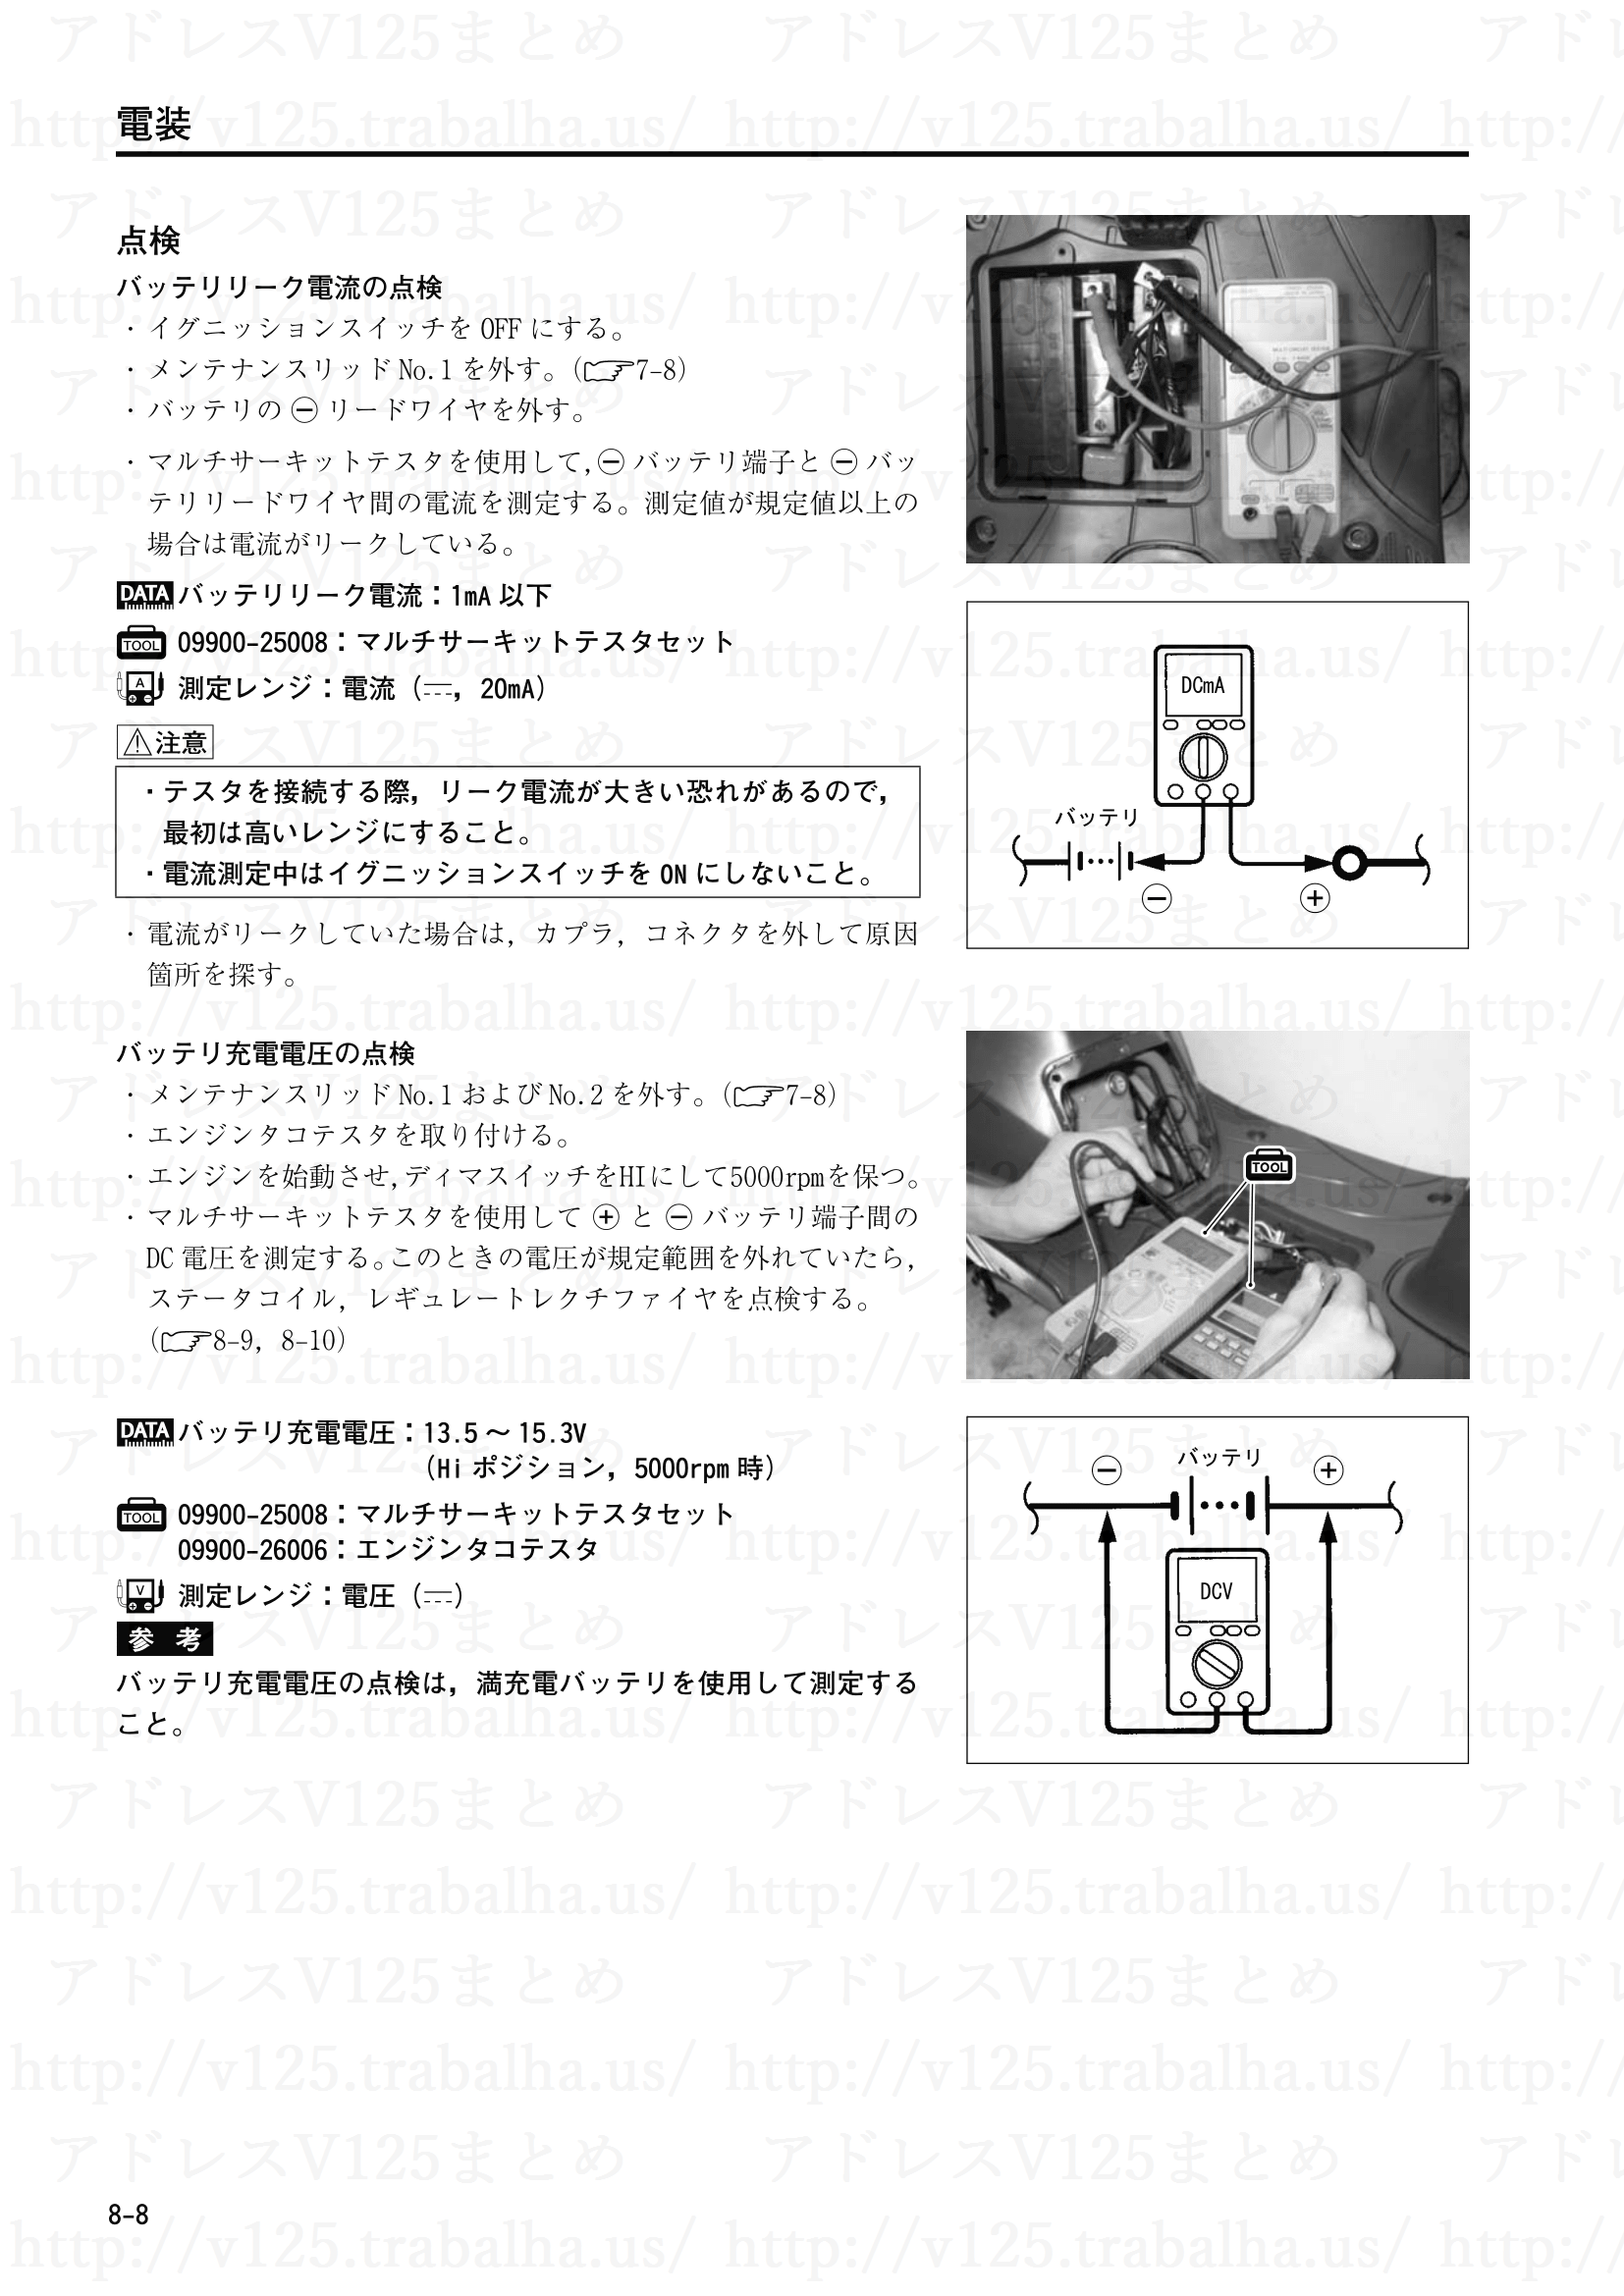 8-8【電装】充電装置の点検